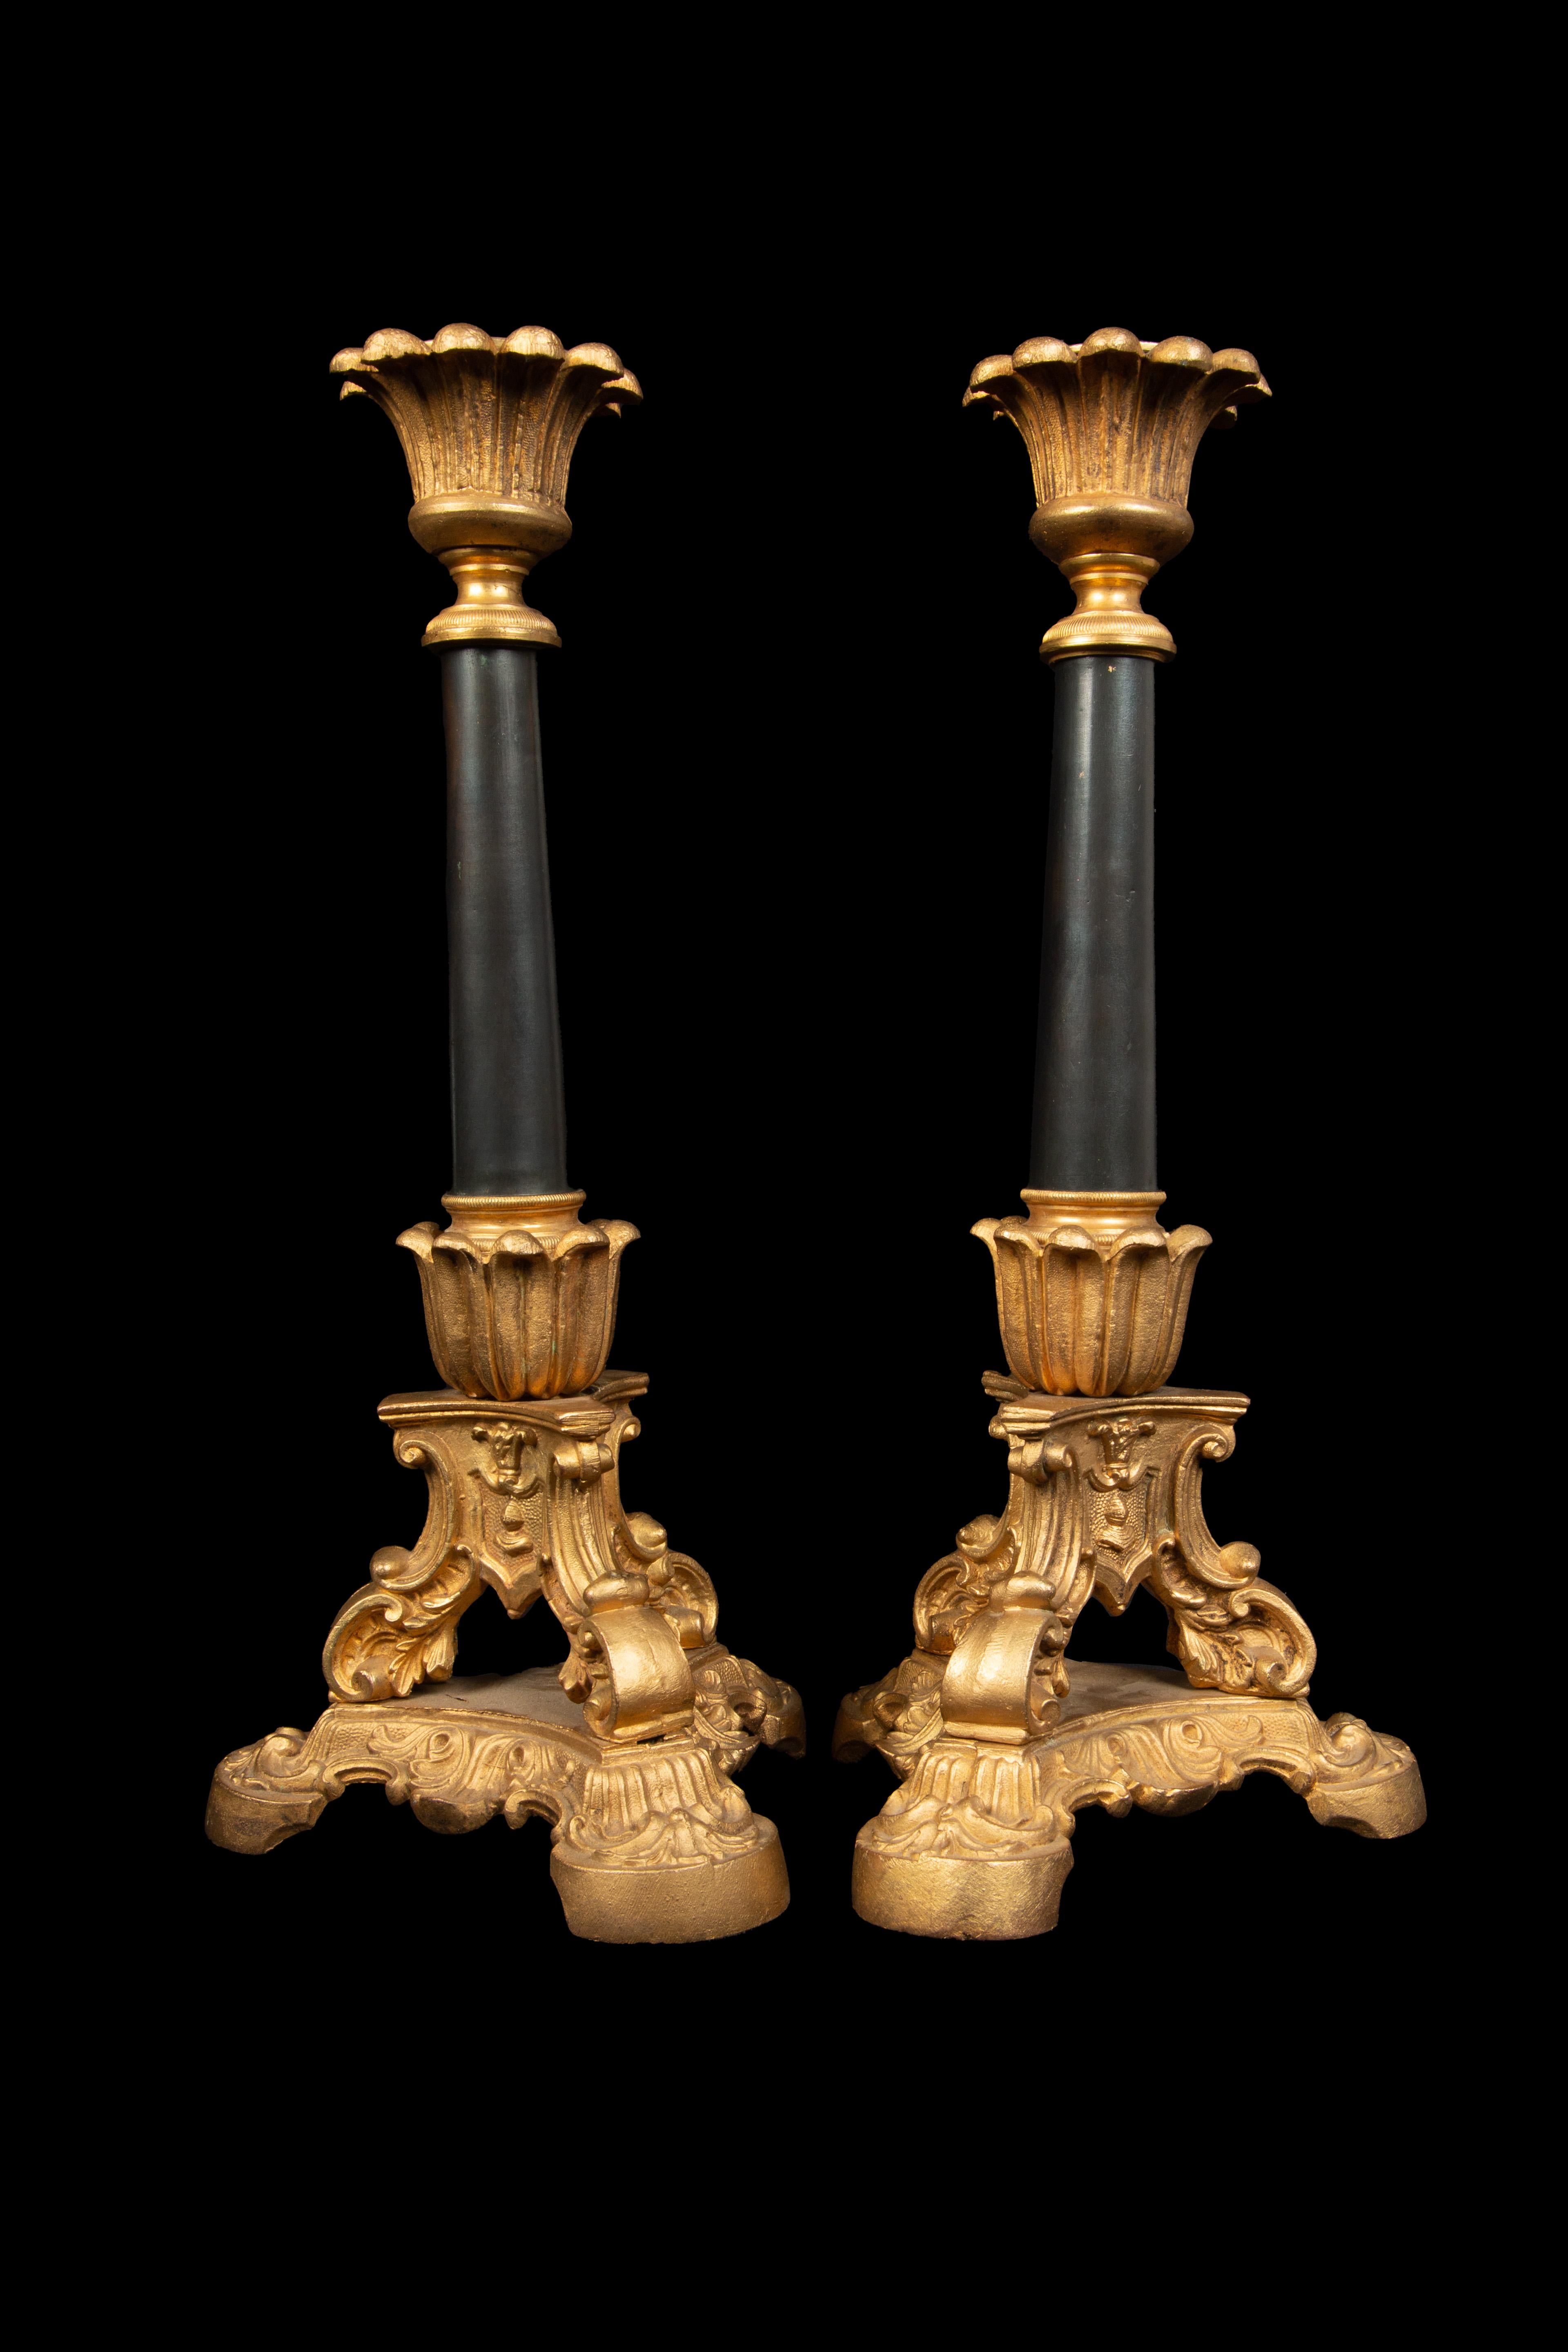 Kerzenständer aus dem 19. Jahrhundert: Diese 13 Zoll hohen Kerzenständer aus vergoldeter Bronze und schwarz patiniertem Metall haben einen eleganten Dreibeinfuß. Mit ihrer zeitlosen Ausstrahlung bringen sie Raffinesse und historischen Charme in